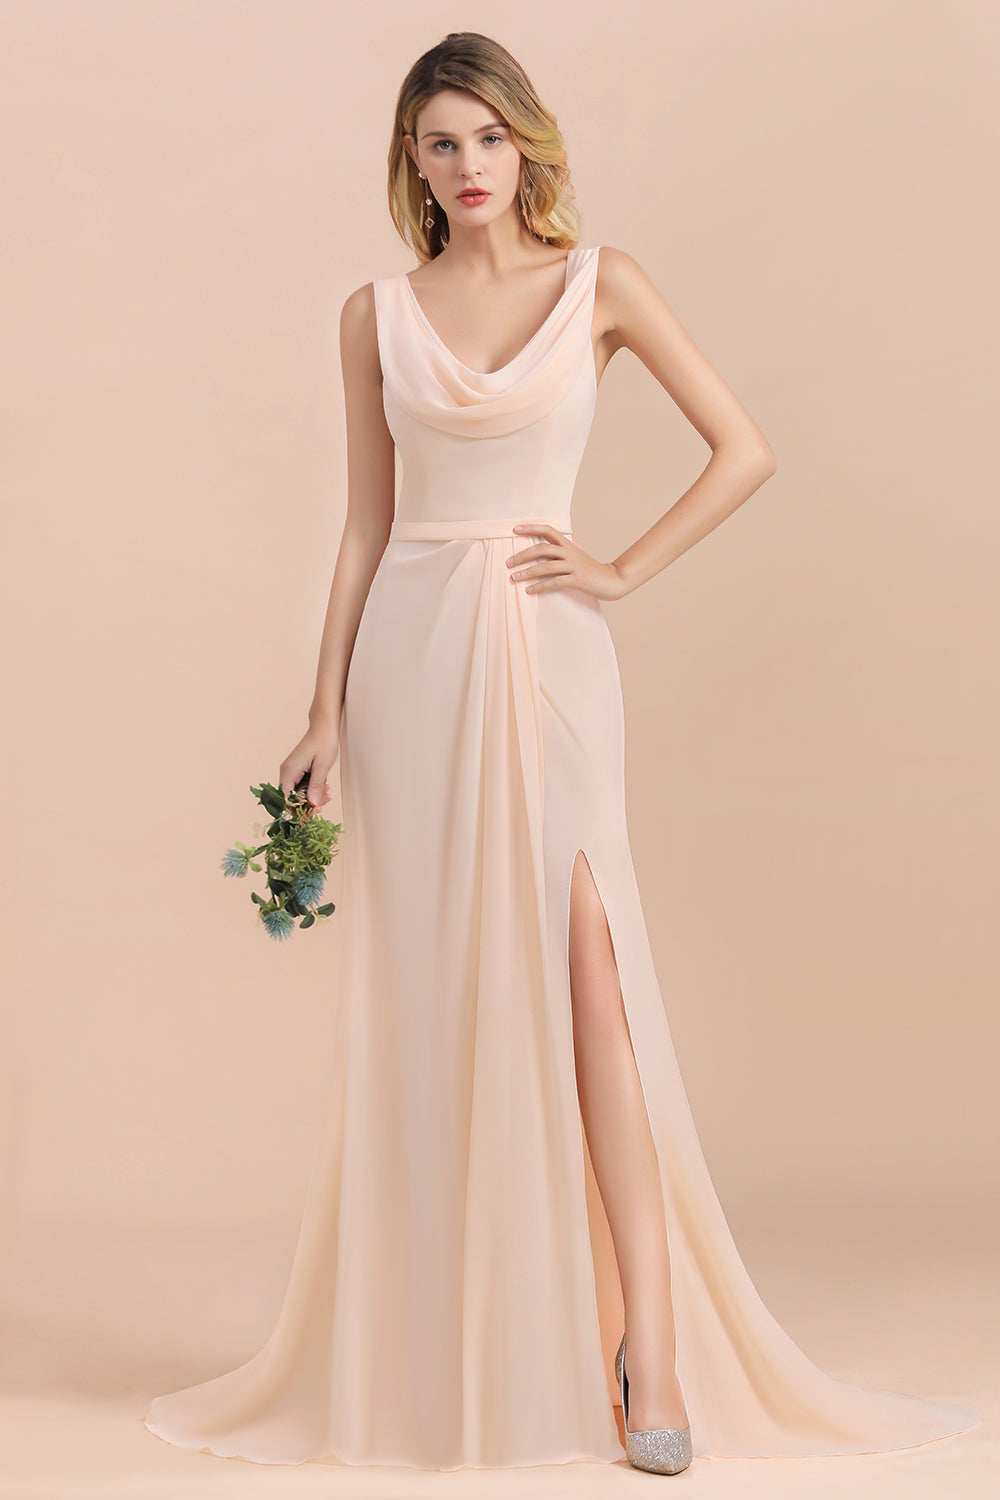 Bestellen Sie Champagne Brautjungfernkleider Lang online bei babyonlinedress.de. Chiffon Kleider Für Brautjungfern für Sie zur Hochzeit gehen.